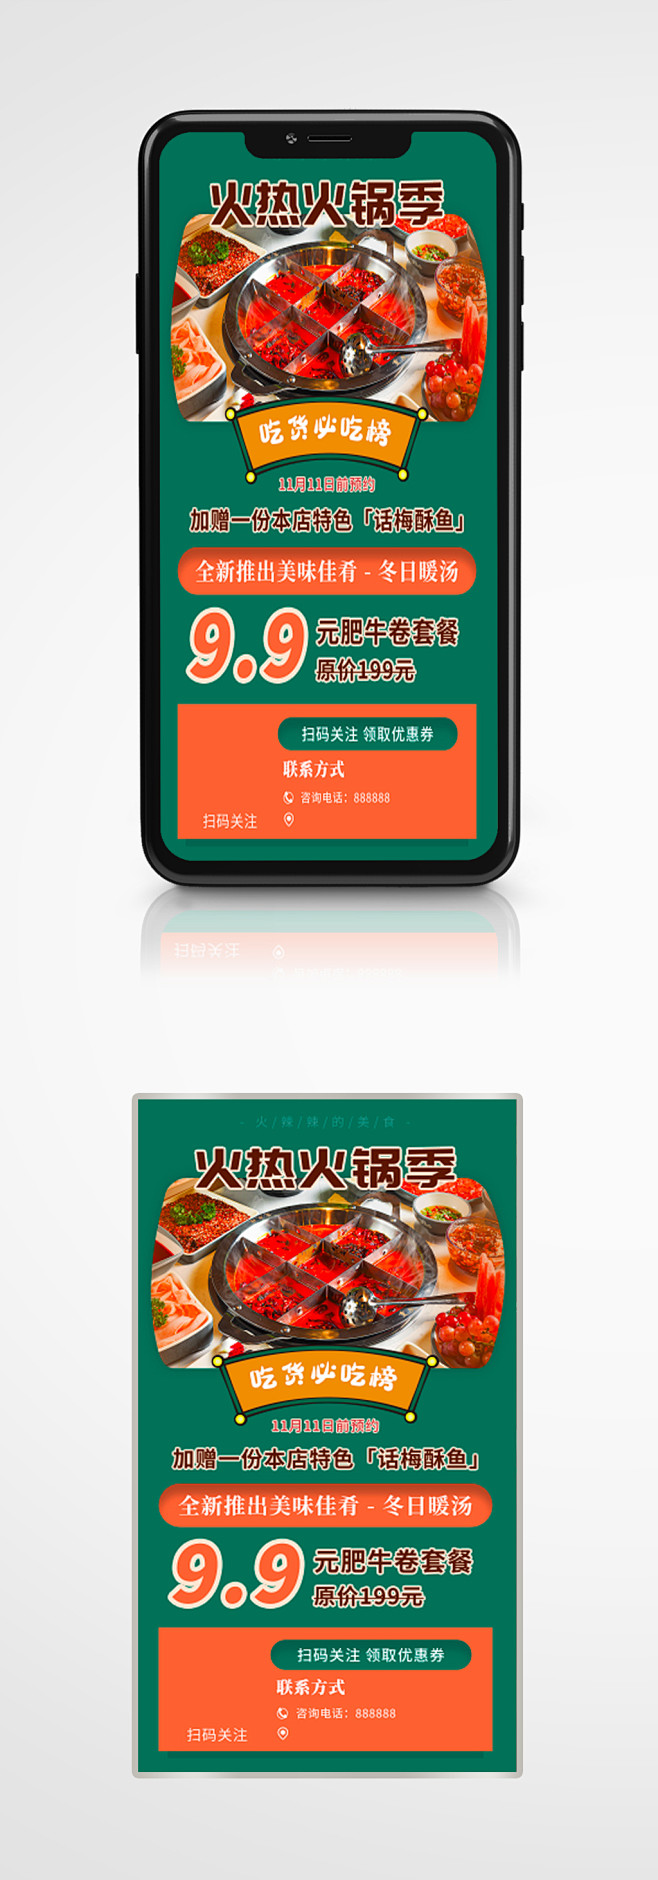 美食火锅烧烤自助餐手机海报国潮橙绿色